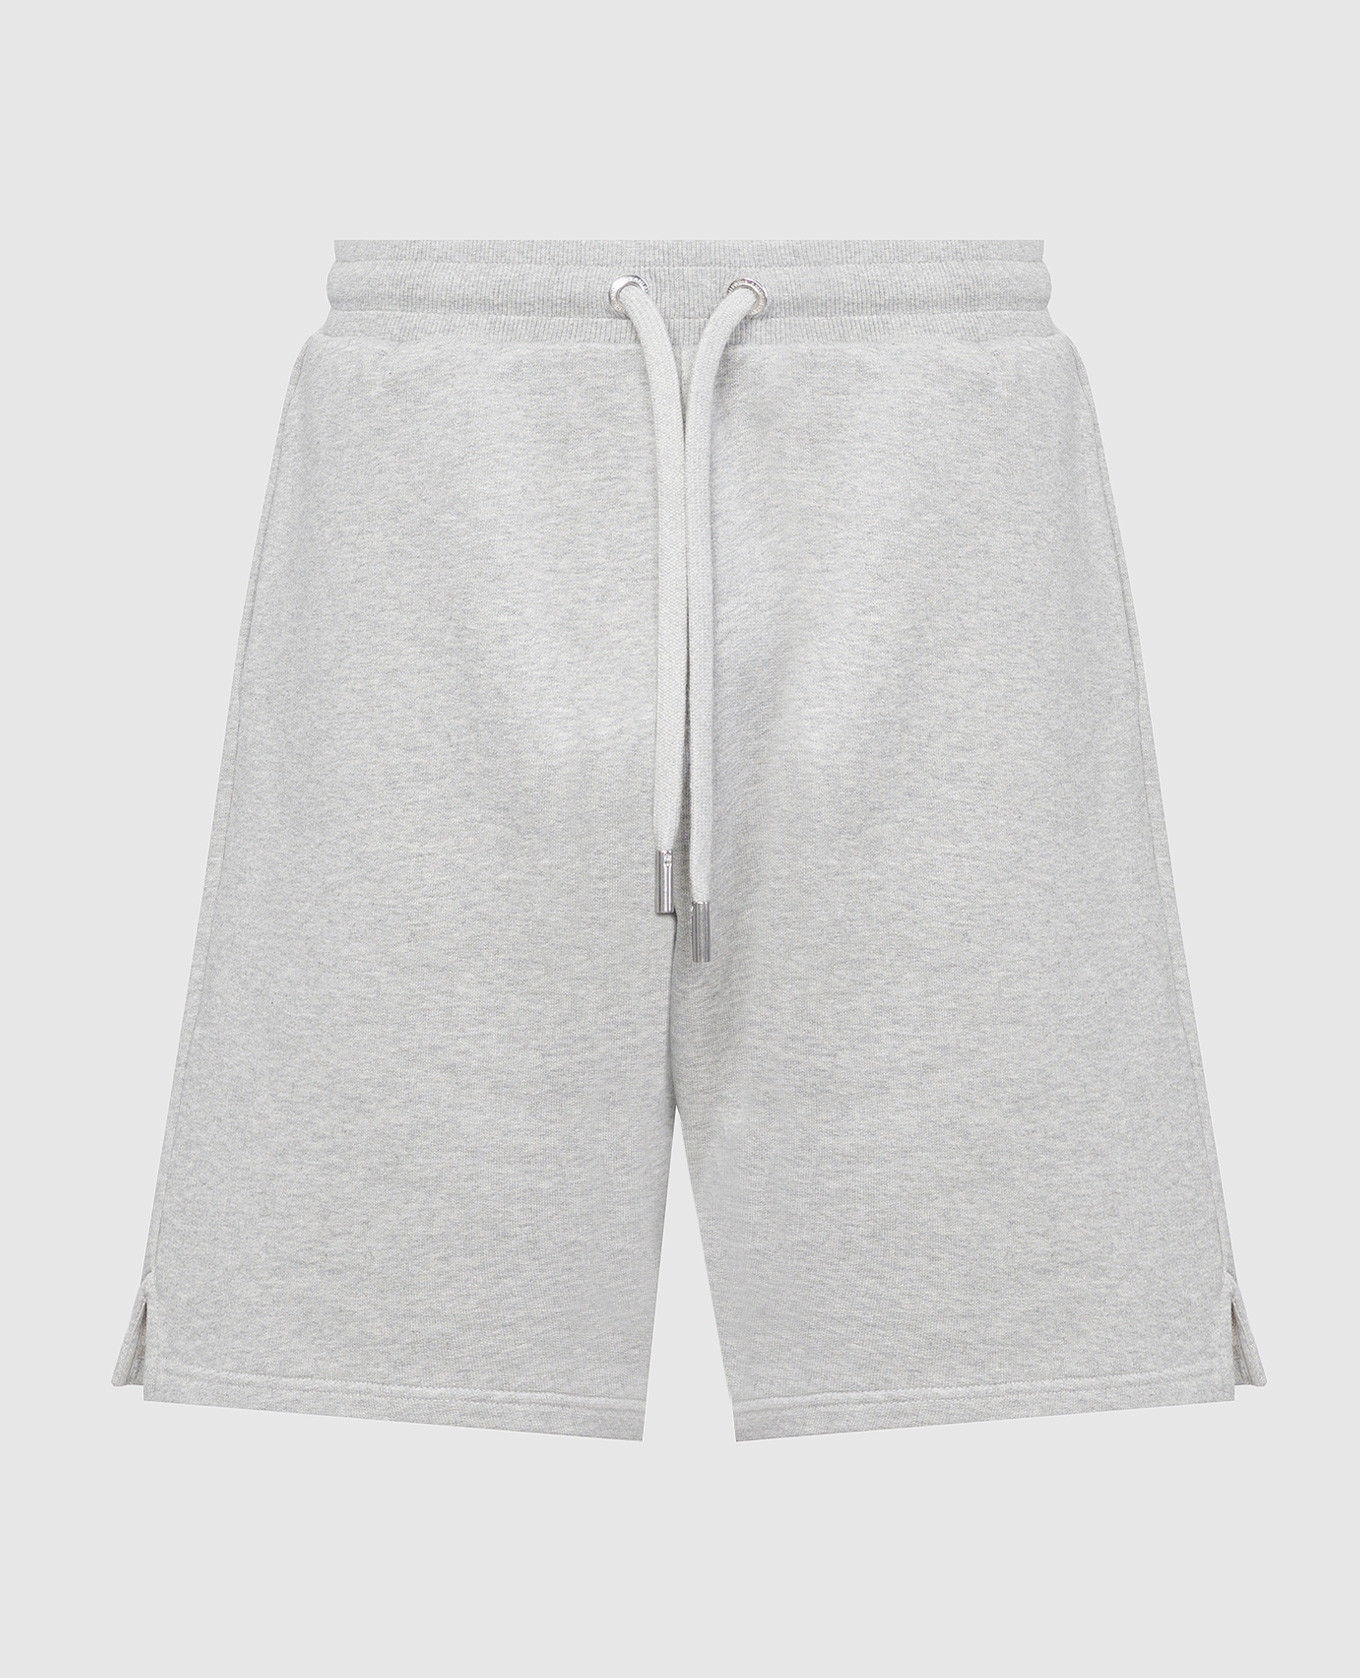 Gray shorts with logo